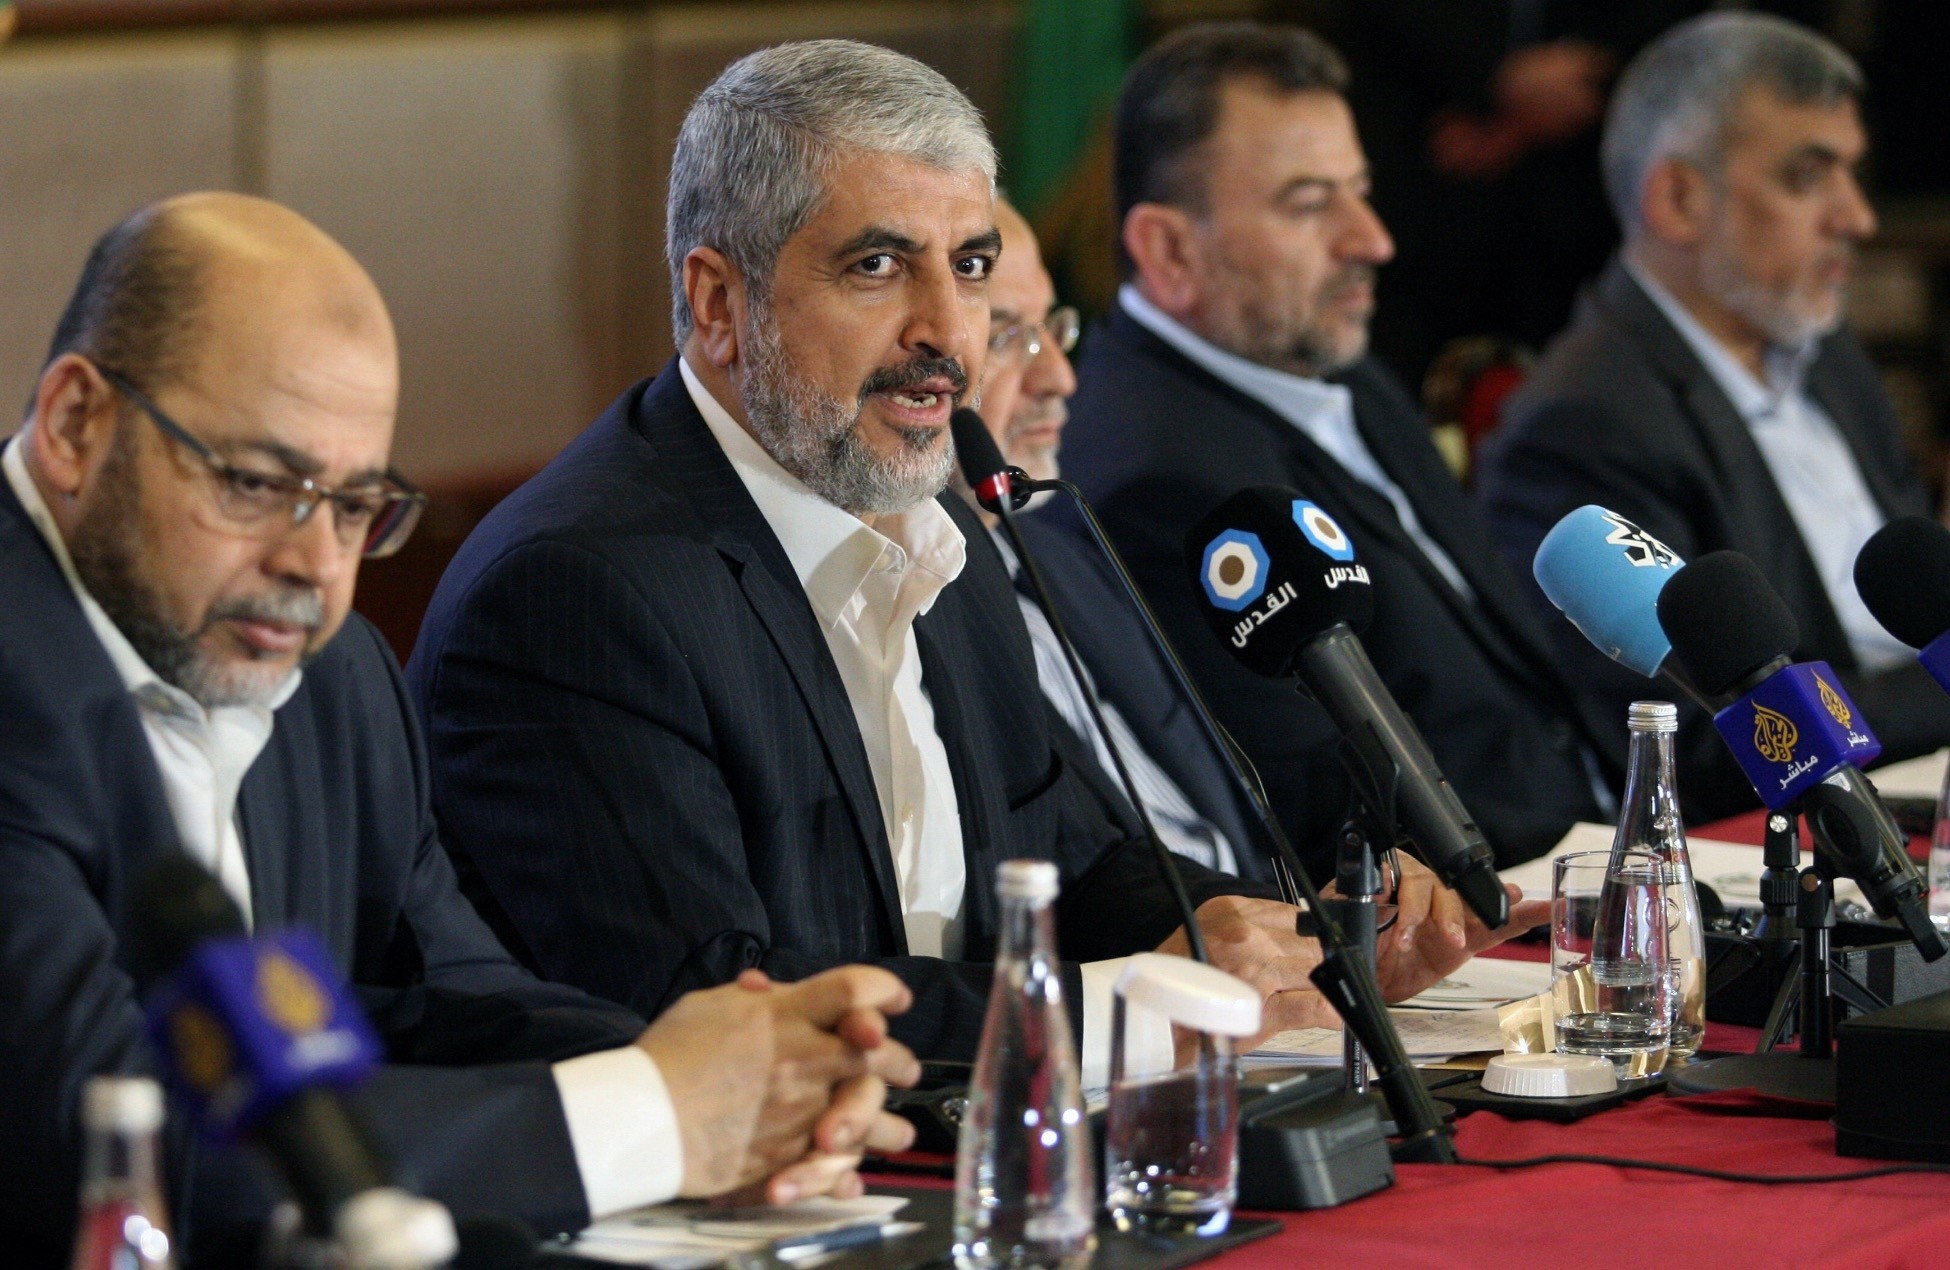 Hamas leader Khaled Mashal announcing the new Hamas policy declaration, Doha, Qatar, May 1.